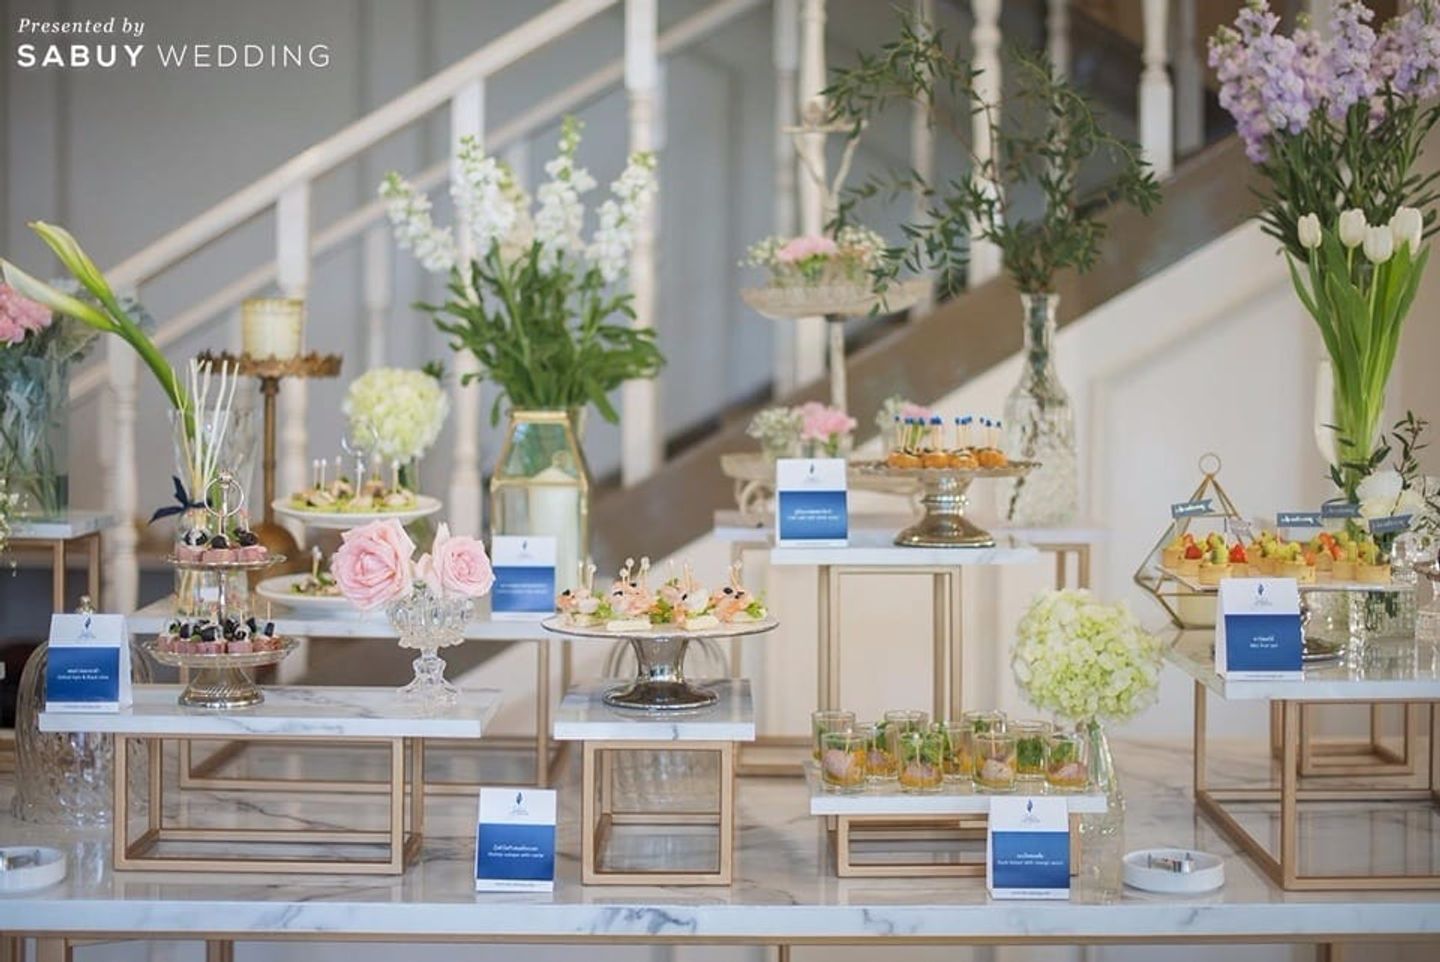 ค็อกเทล,ตกแต่งงานแต่ง รีวิวงานแต่งสวยหรูด้วย Long table หวานซึ้งสื่อรักดอกลาเวนเดอร์ @Bangkok Garden Studio